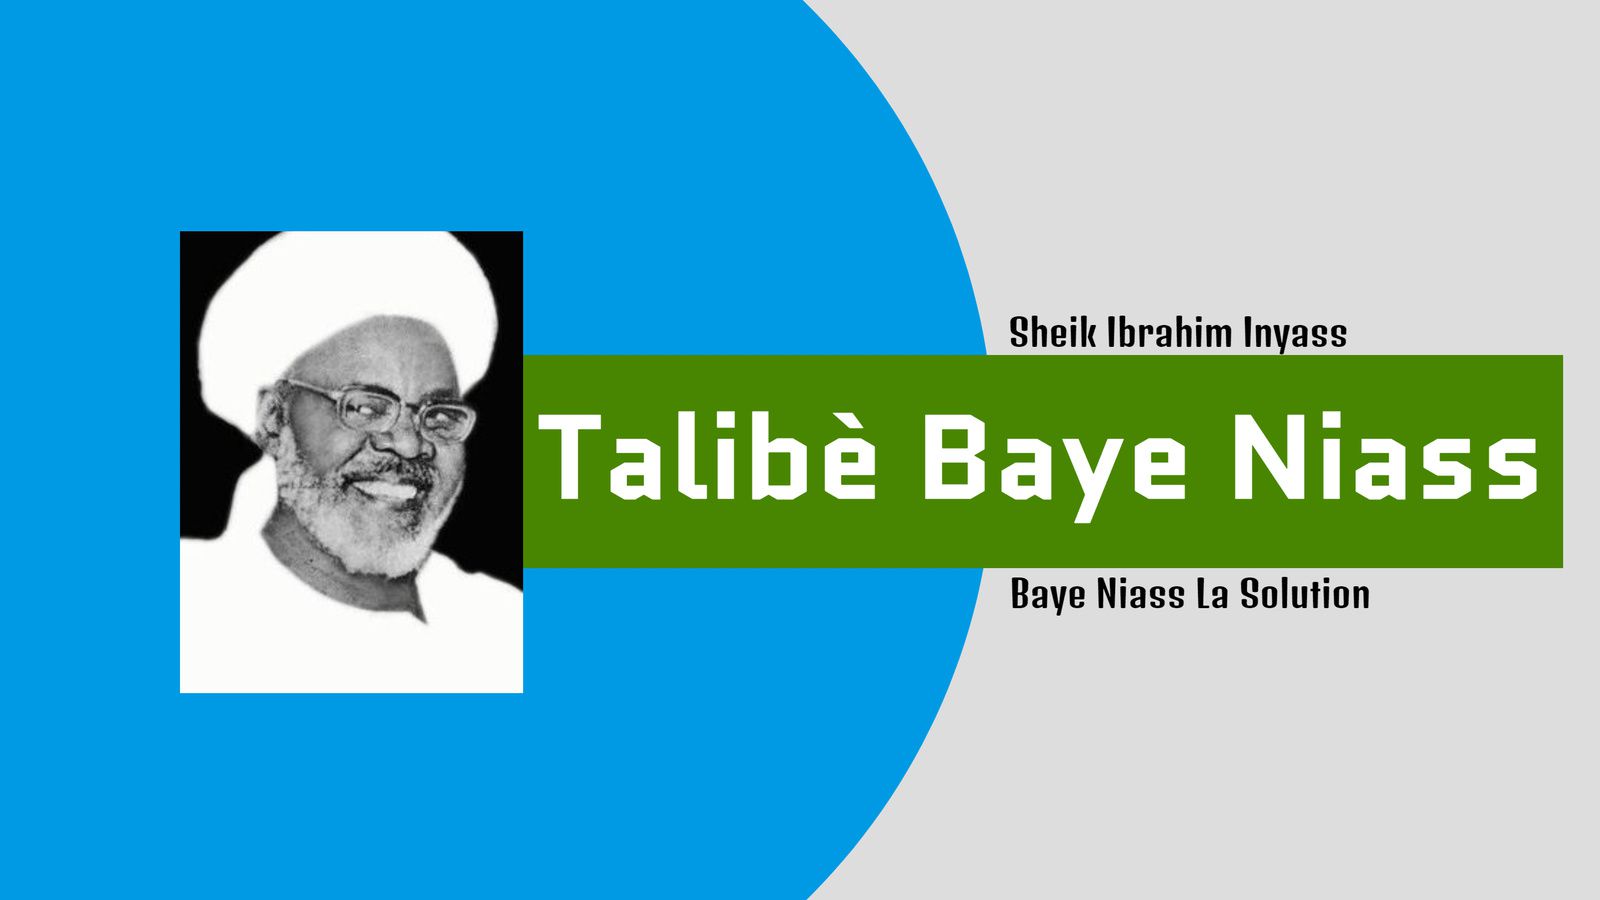 Talibè Baye Niass